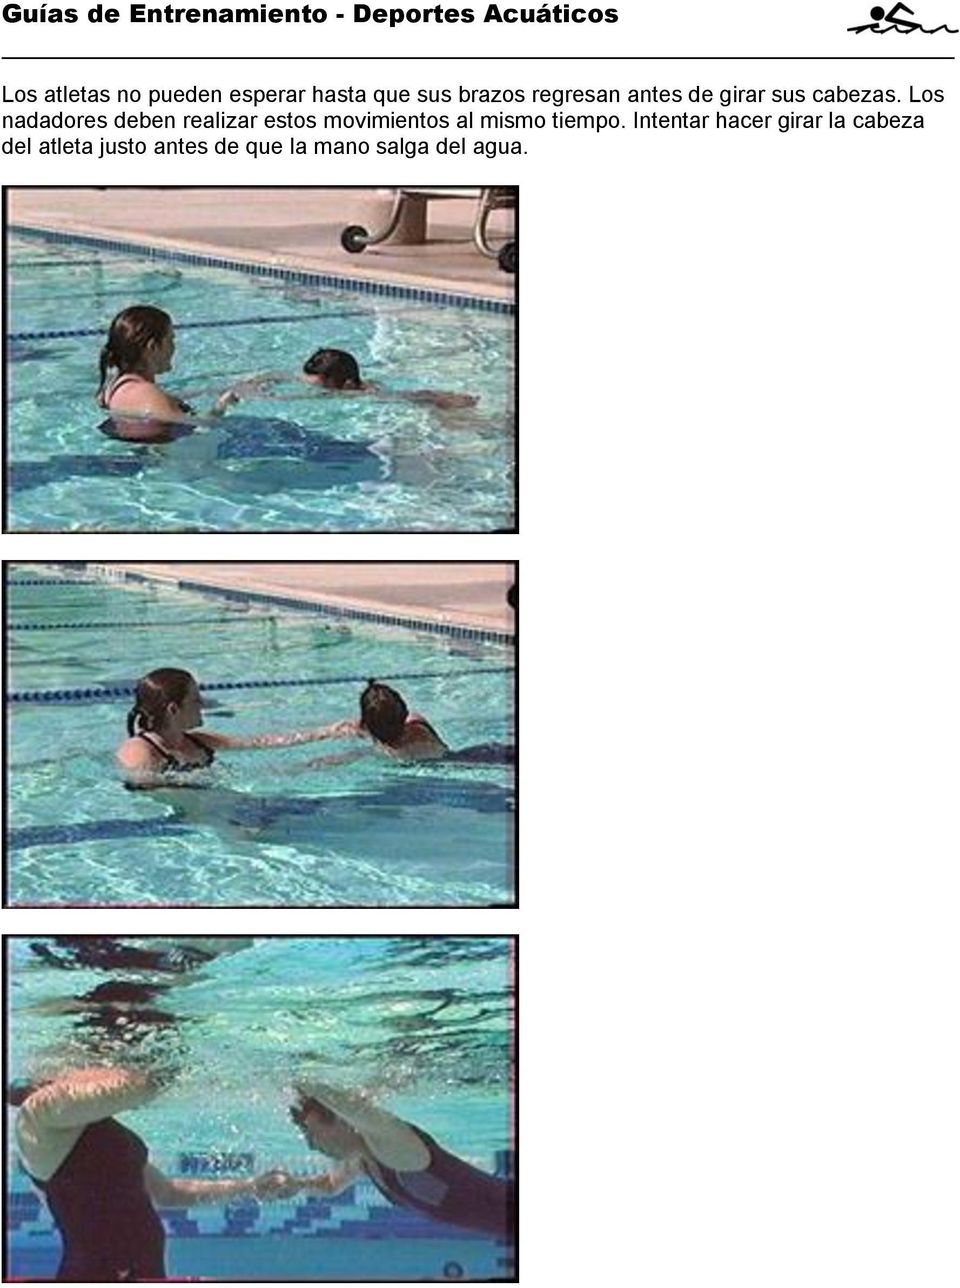 Los nadadores deben realizar estos movimientos al mismo